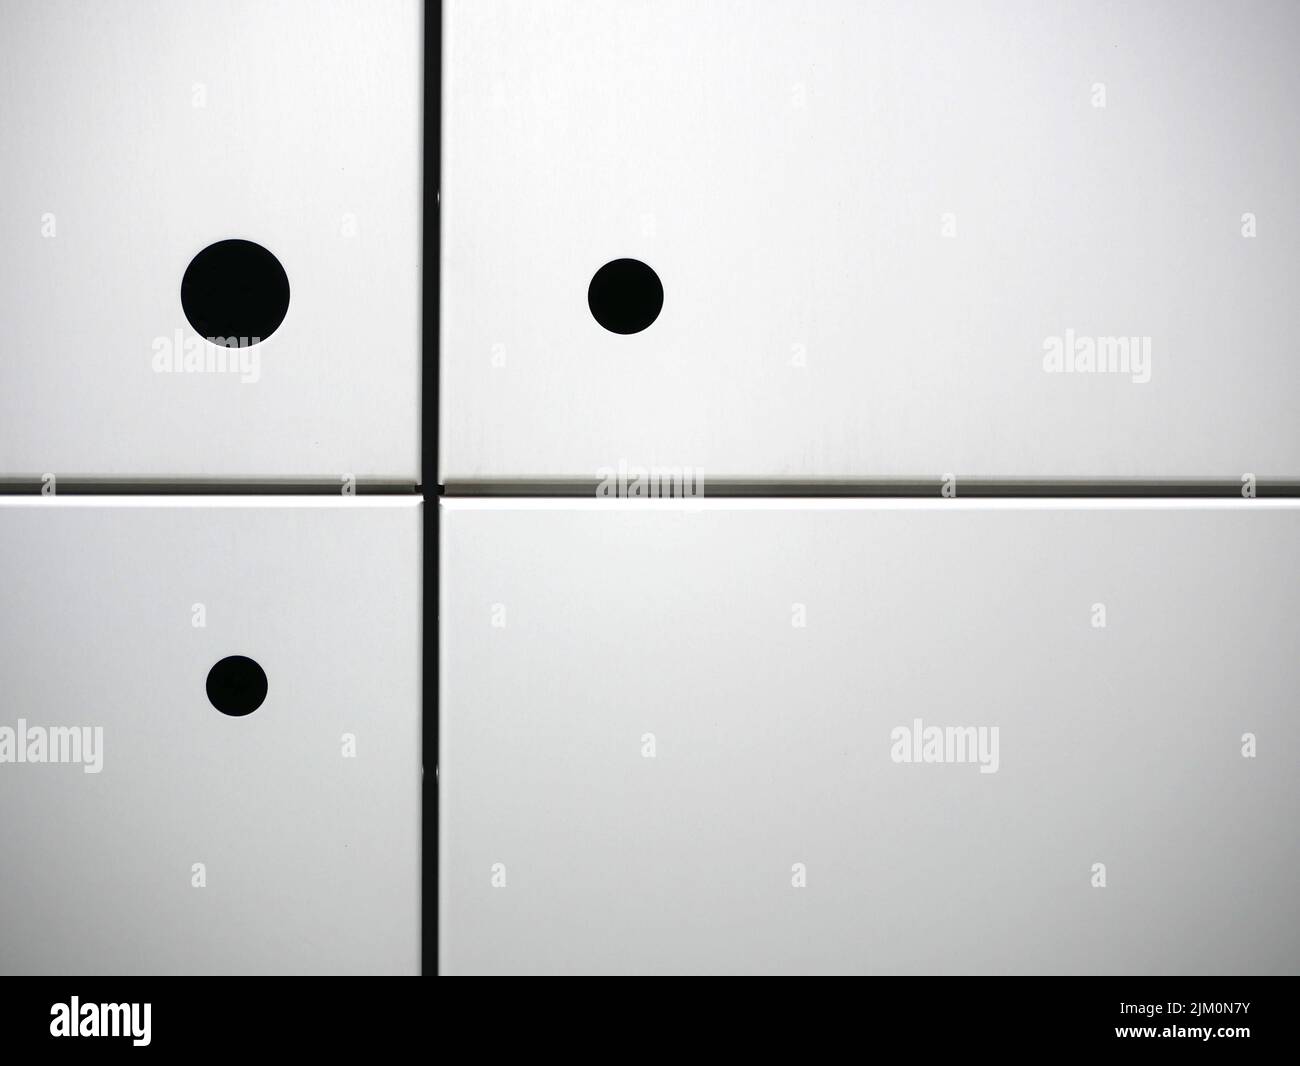 Three black circles on four white squares Stock Photo